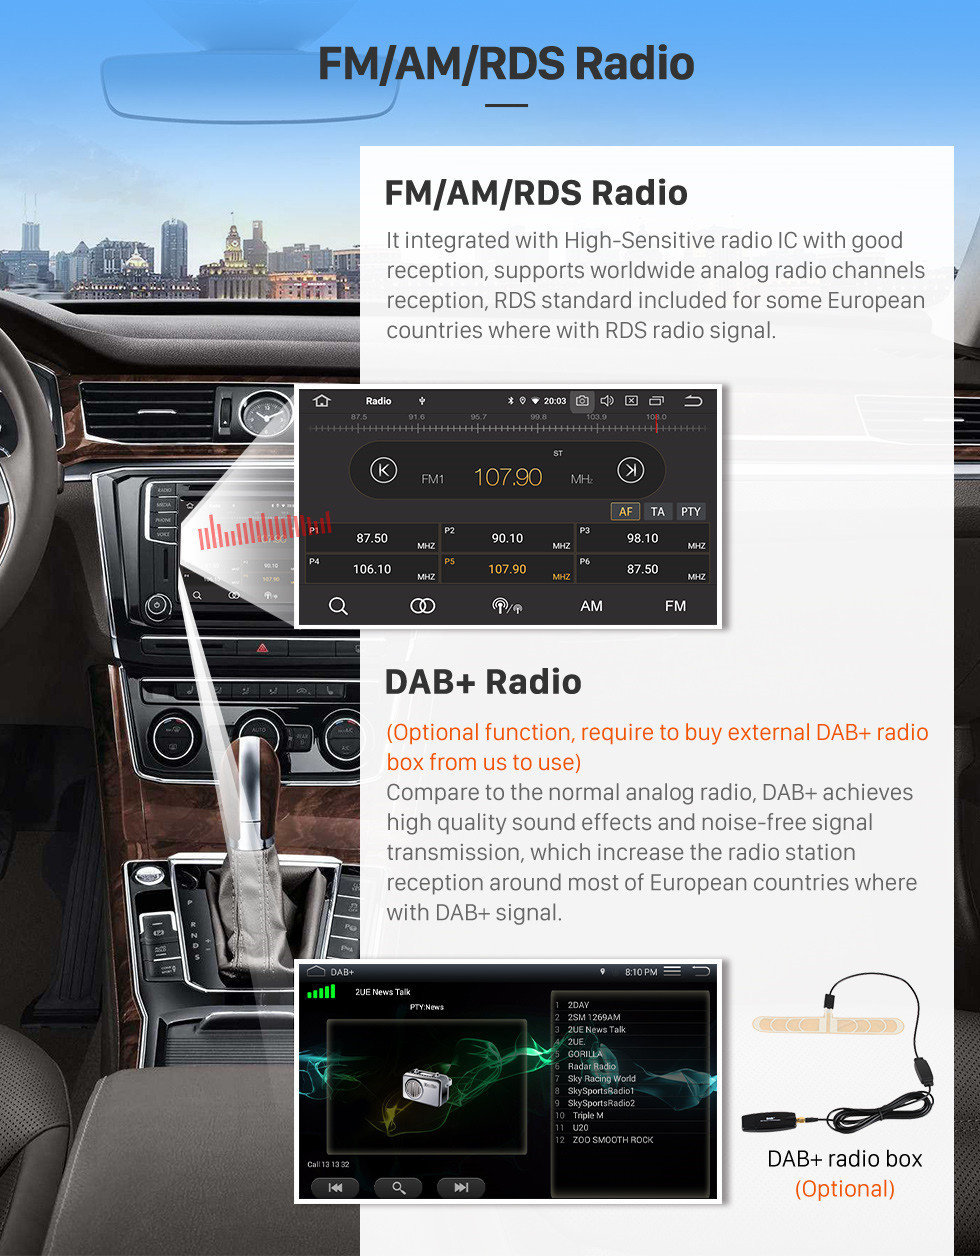 Seicane 2007-2017 Kia Sportage Manuel A / C Android 11.0 Radio de navigation GPS 9 pouces Bluetooth Bluetooth HD à écran tactile USB Support de musique Carplay Support de commande au volant